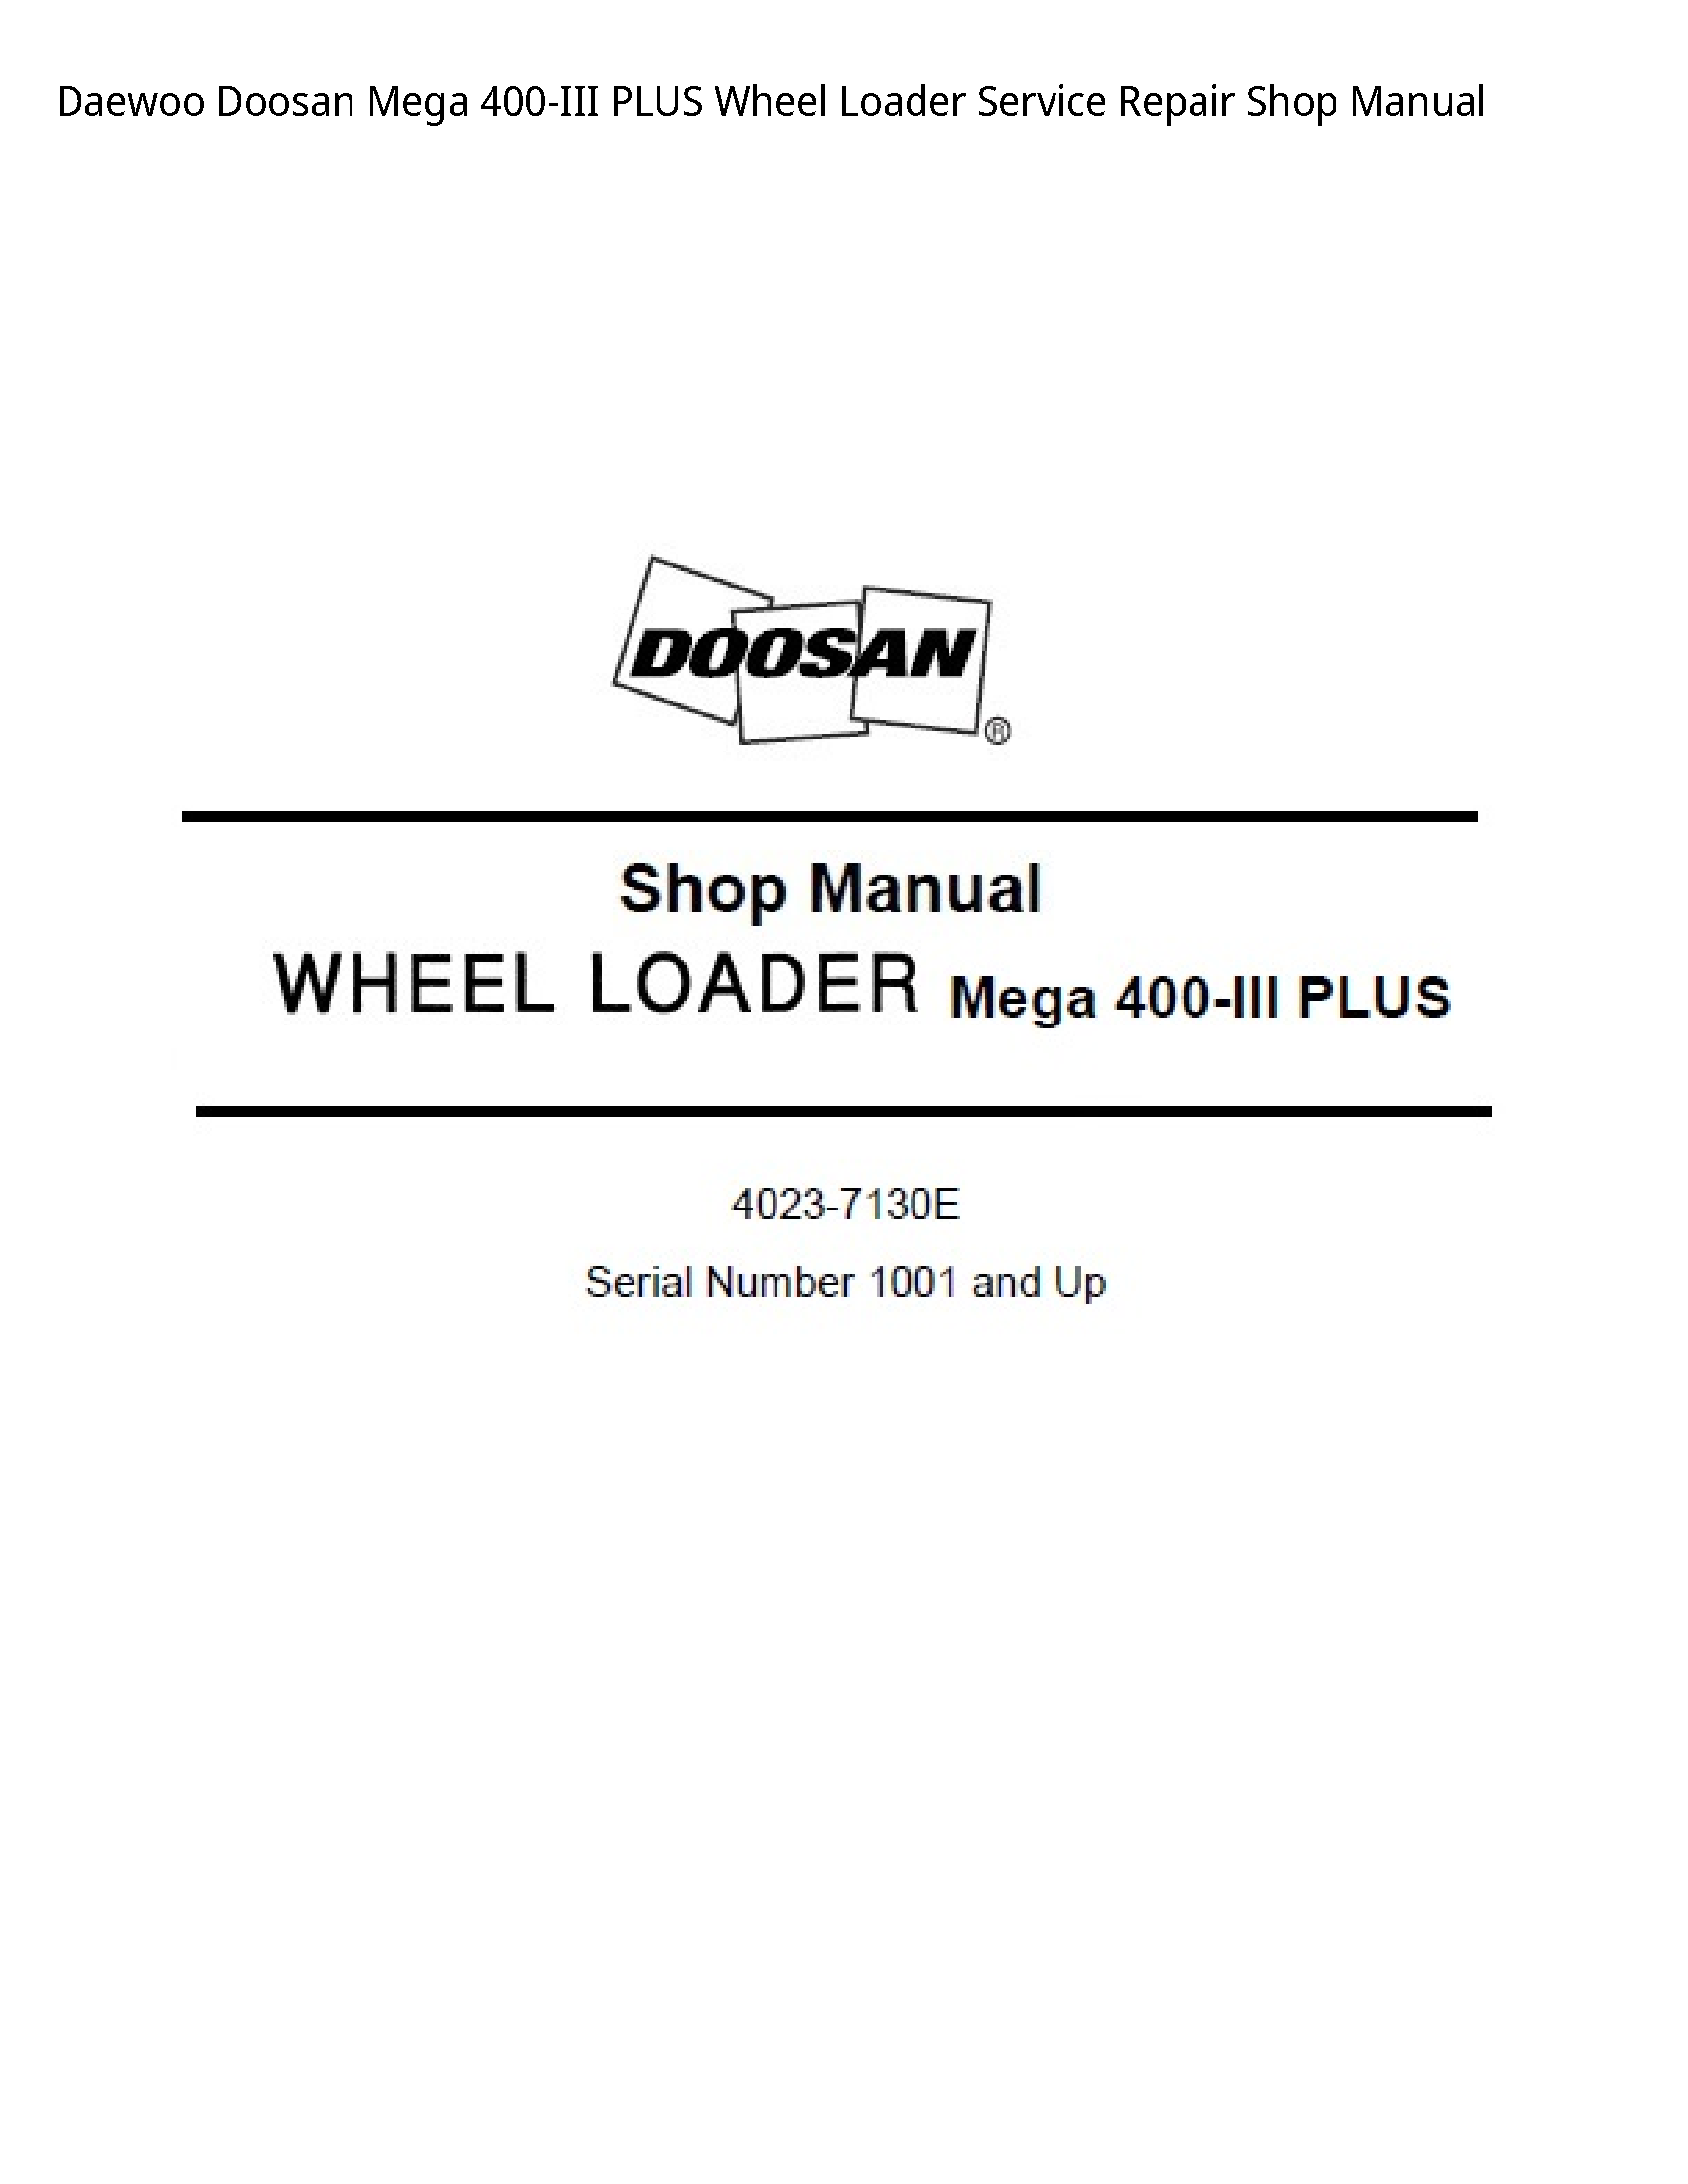 Daewoo Doosan 400-III Mega PLUS Wheel Loader manual